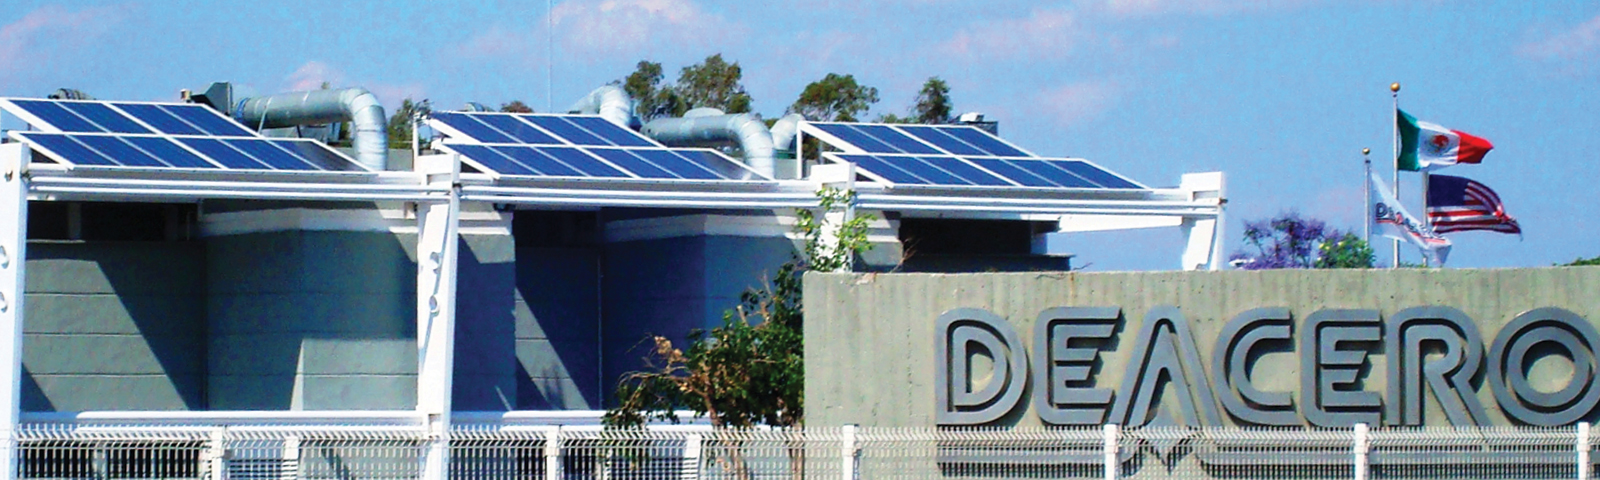 <div class='media-slider'>



        <div class='media-slider__description'>



          <h4>De Acero</h4>



          <p>Proyecto energía eléctrica solar oficinas, 25 kW en



            interconexión a red de CFE. Celaya 2010.<span> Imágenes 100% Originales Casolar ®</span></p>



          </div>



          <div class='media-slider__image'>



            <img src='http://www.casolar.com.mx/wp-content/themes/casolar/img/casolar__logo--deacero.jpg'>



          </div>



        </div>